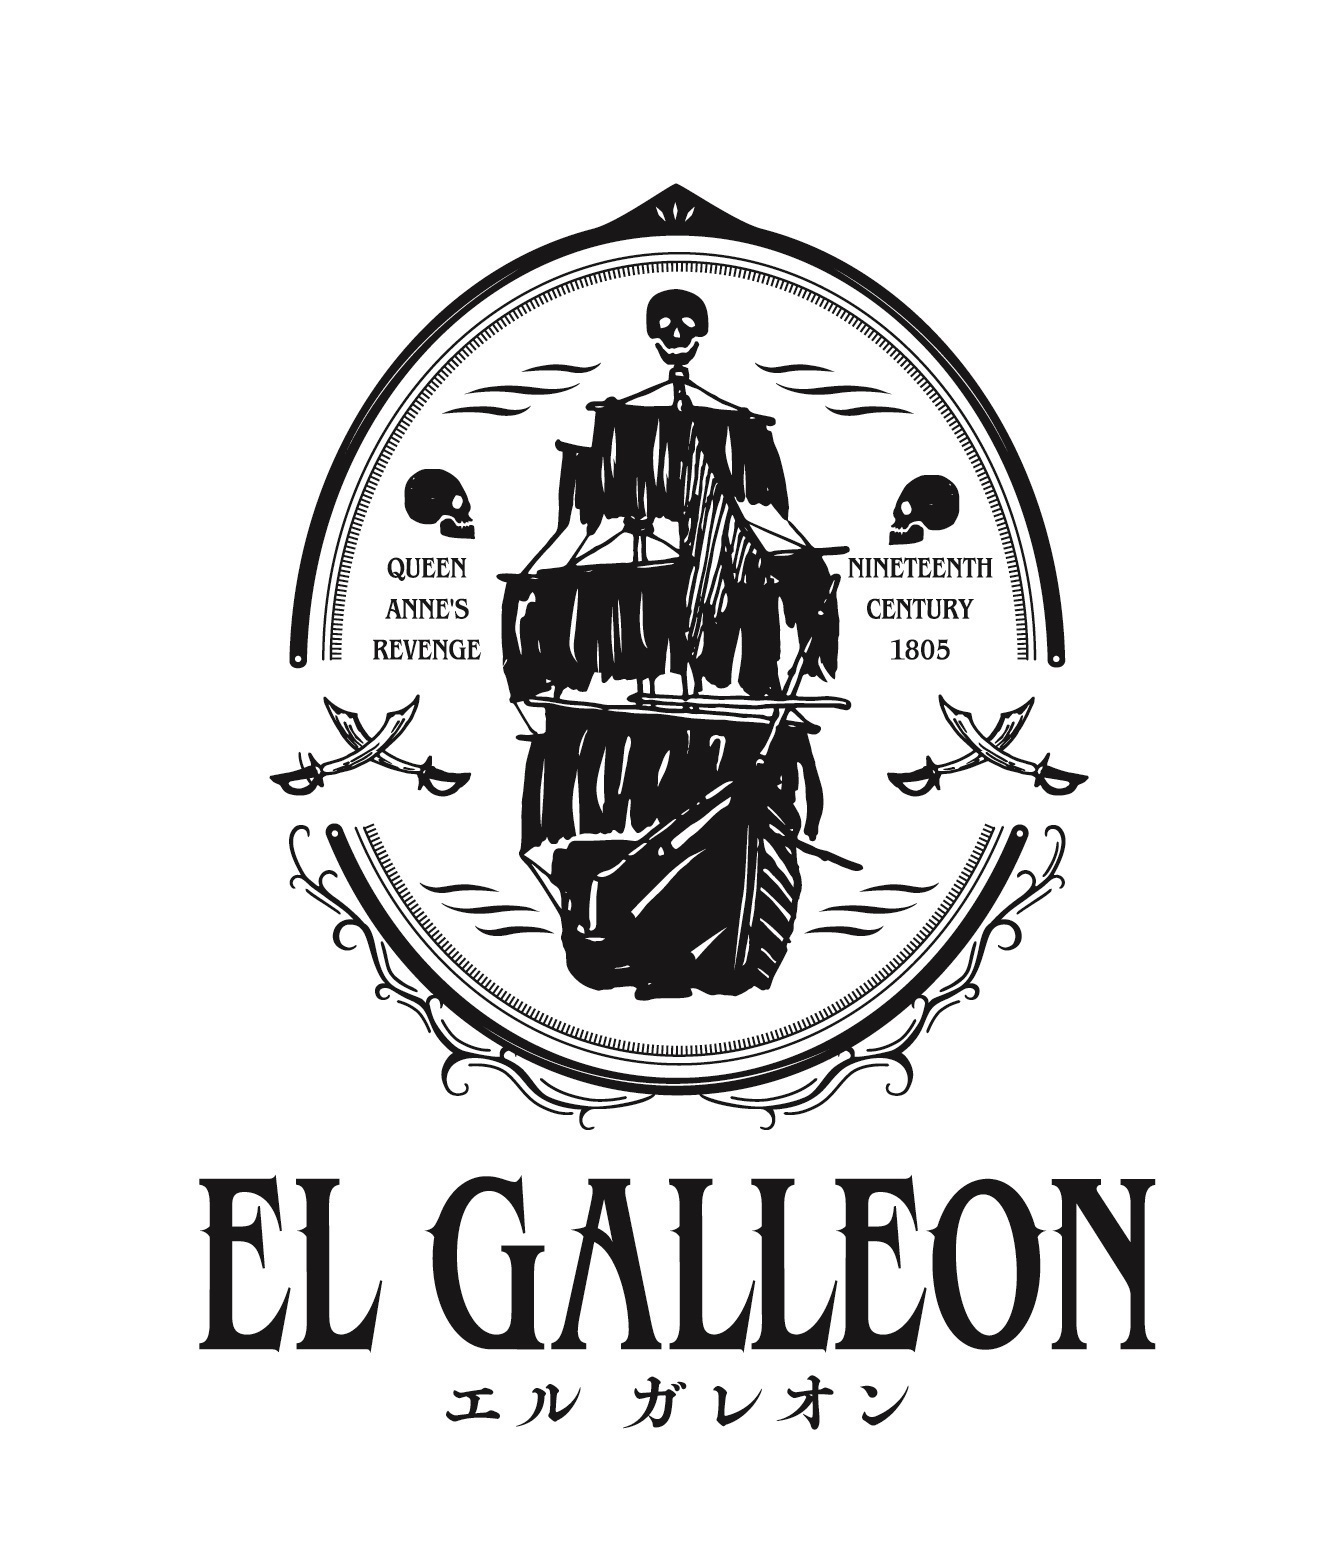 Reading High 新作公演 El Galleon エルガレオン 海賊の衣装を纏った 梅原裕一郎のコメント動画が解禁 Spice エンタメ特化型情報メディア スパイス